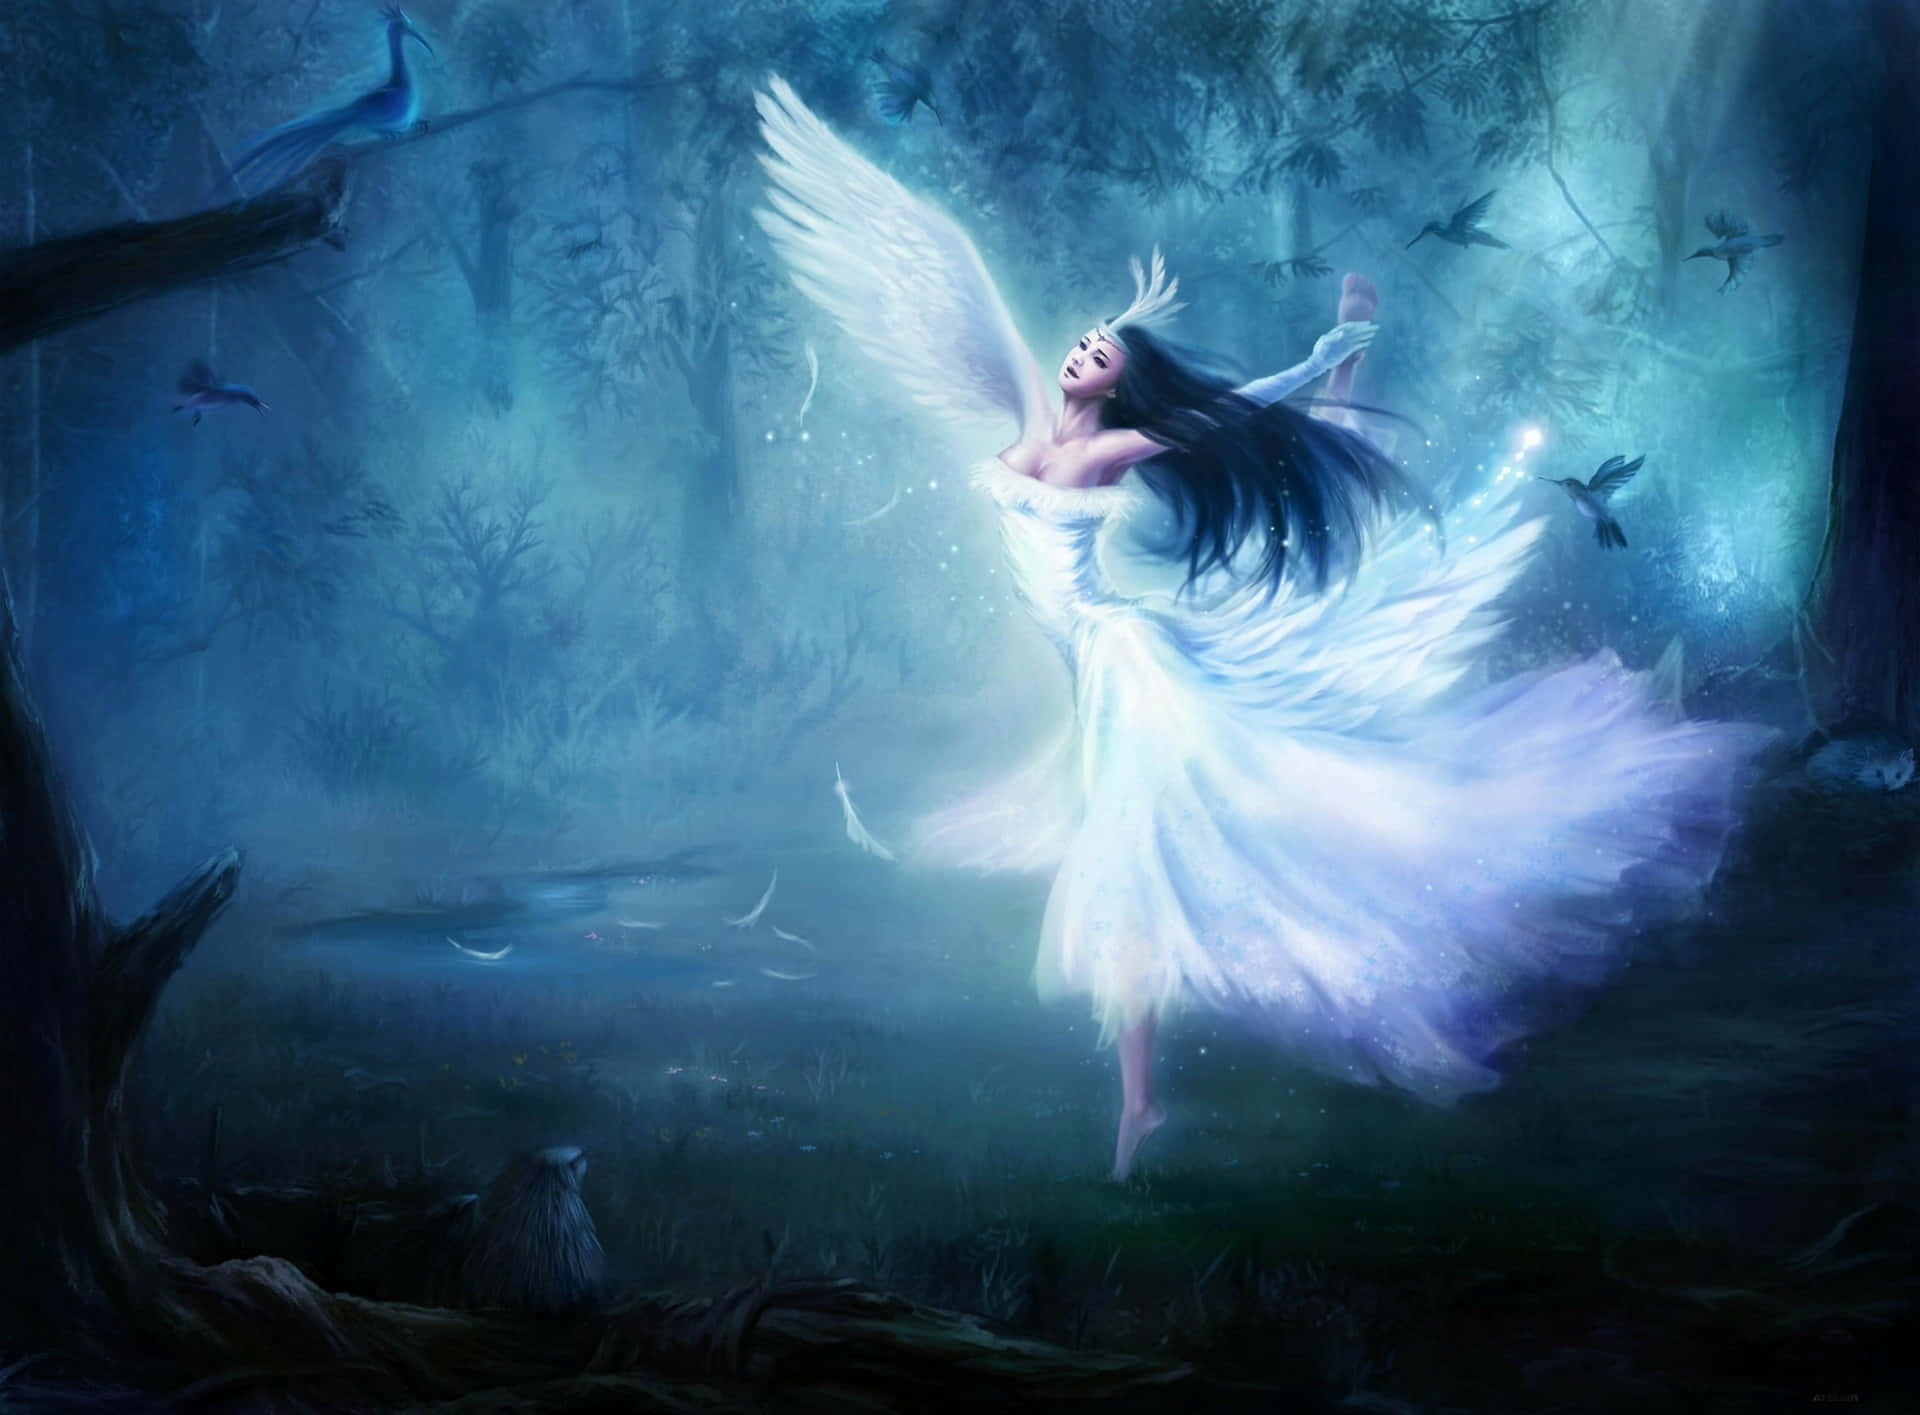 "An Evil Fairy Casts a Spell" Wallpaper